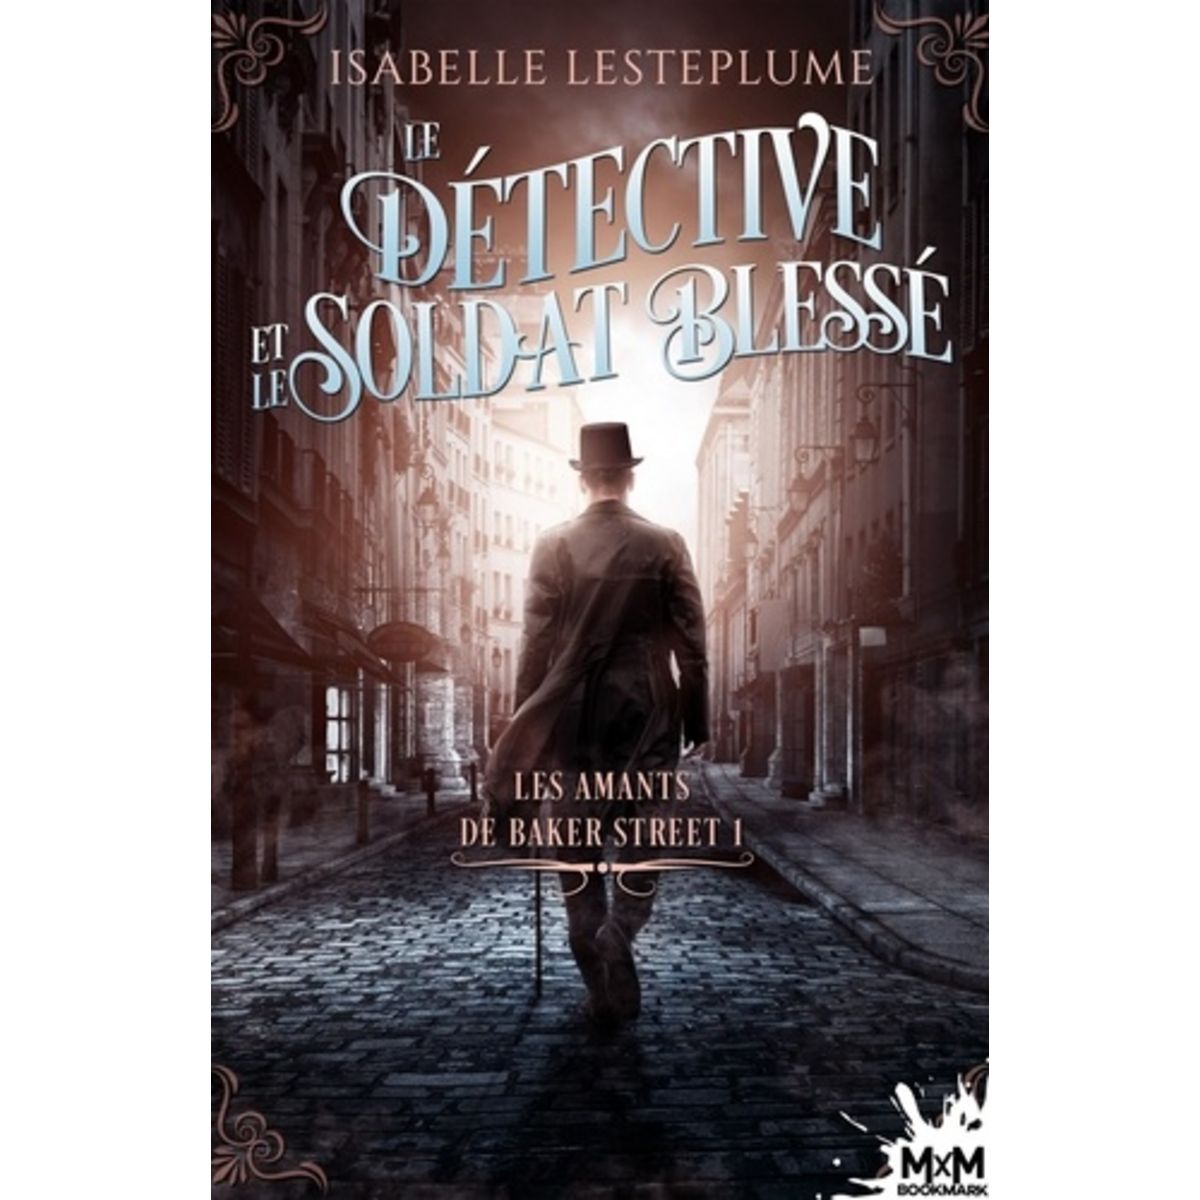  LES AMANTS DE BAKER STREET TOME 1 : LE DETECTIVE ET LE SOLDAT BLESSE, Lesteplume Isabelle